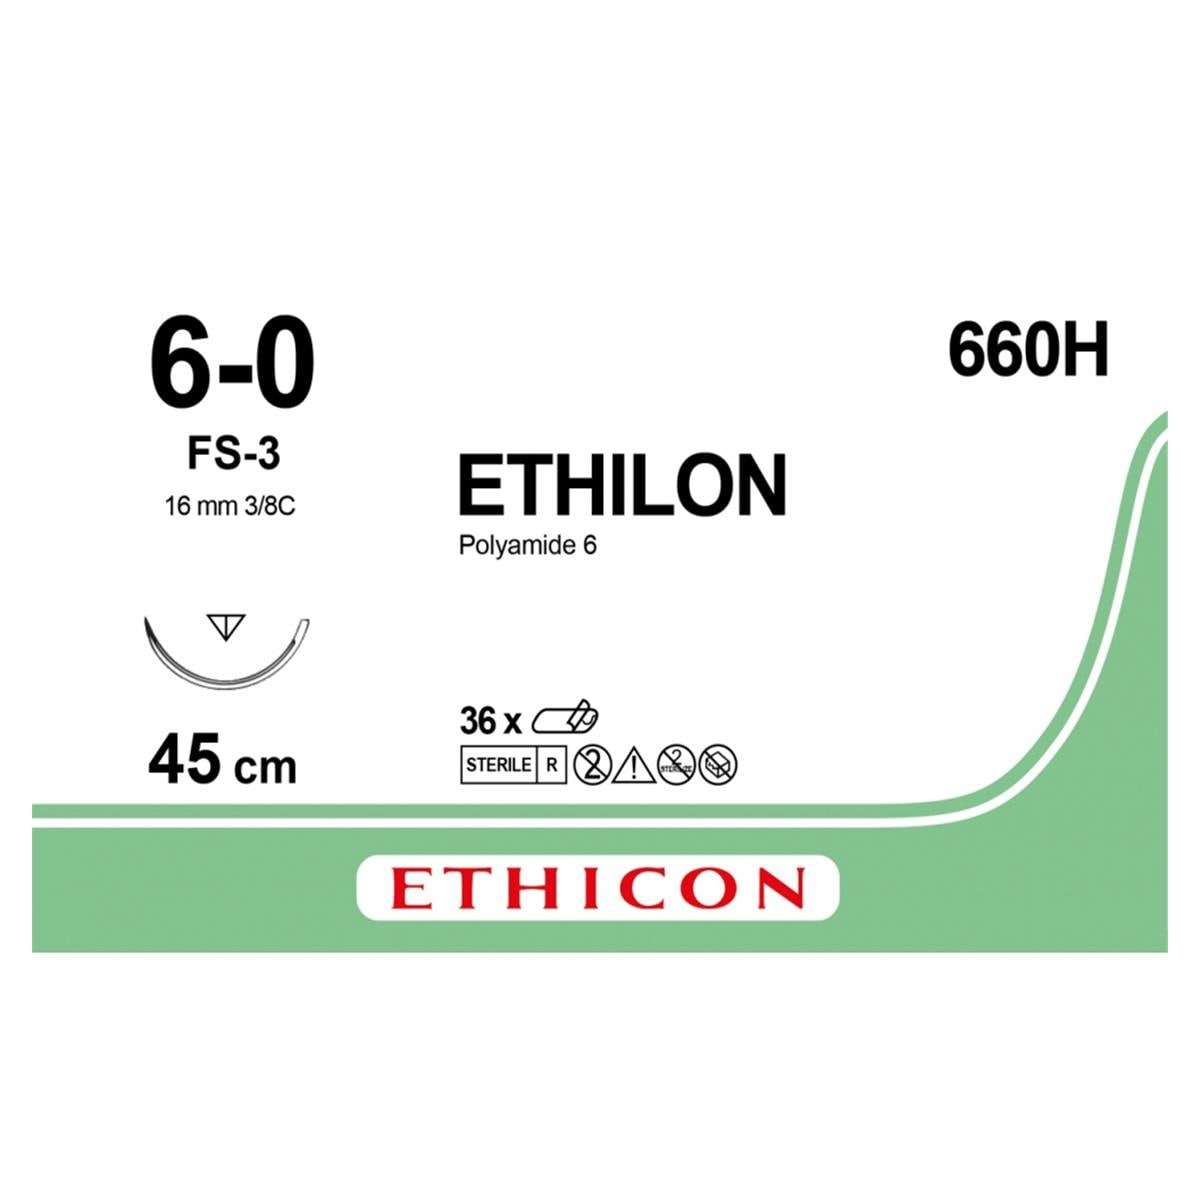 Ethilon - Lengte 45cm zwart, 36 stuks 6-0, naald FS-3 - 660H